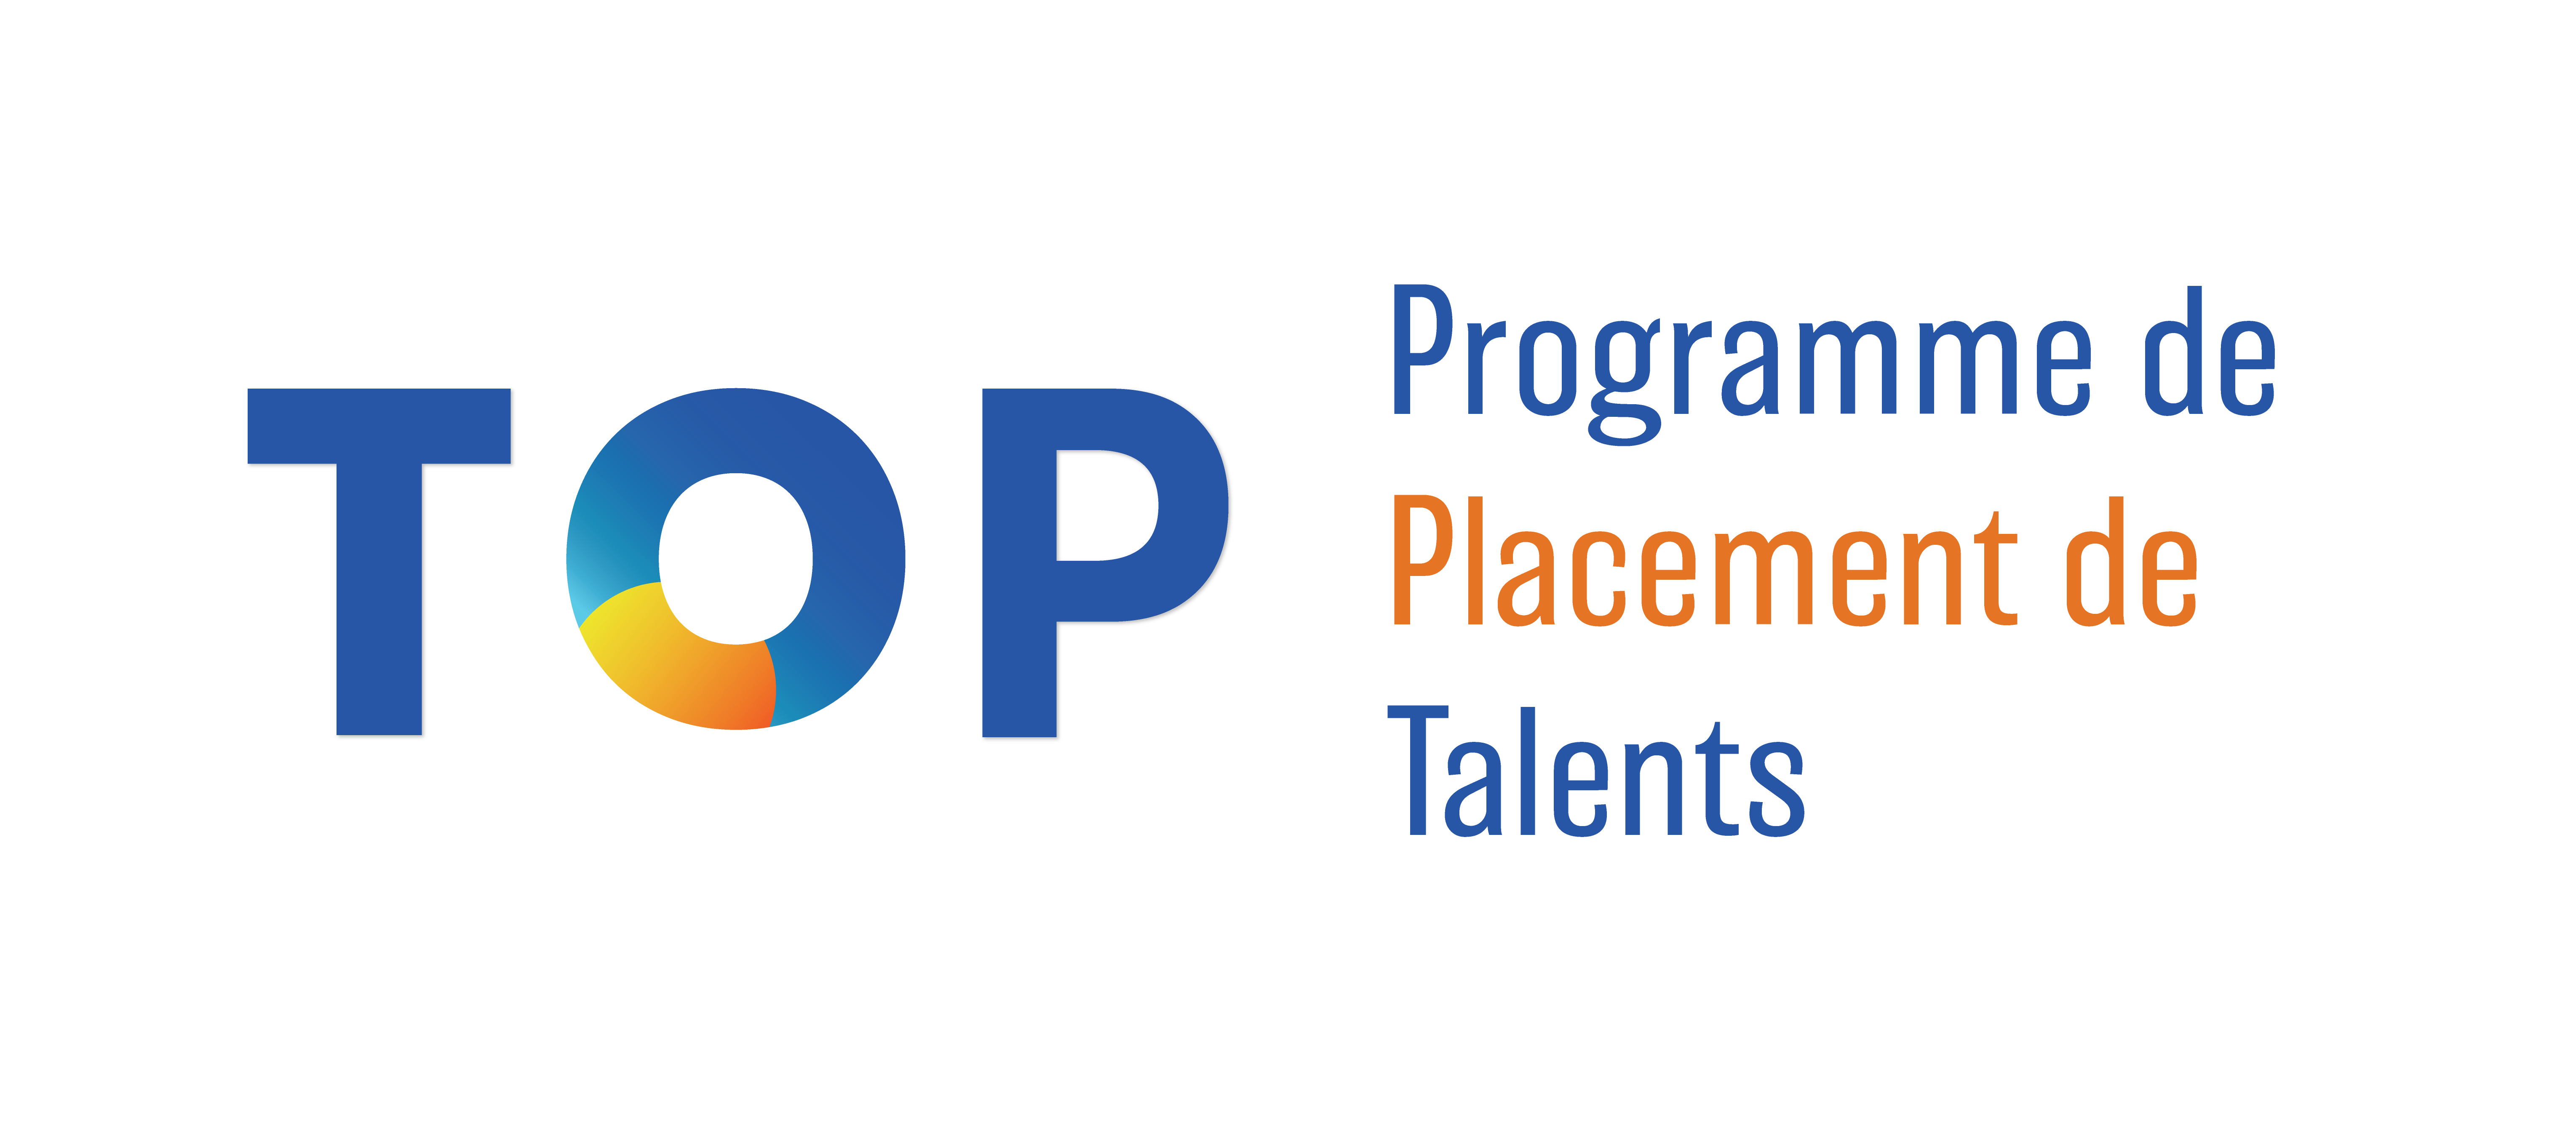 Top placement de talents logo.